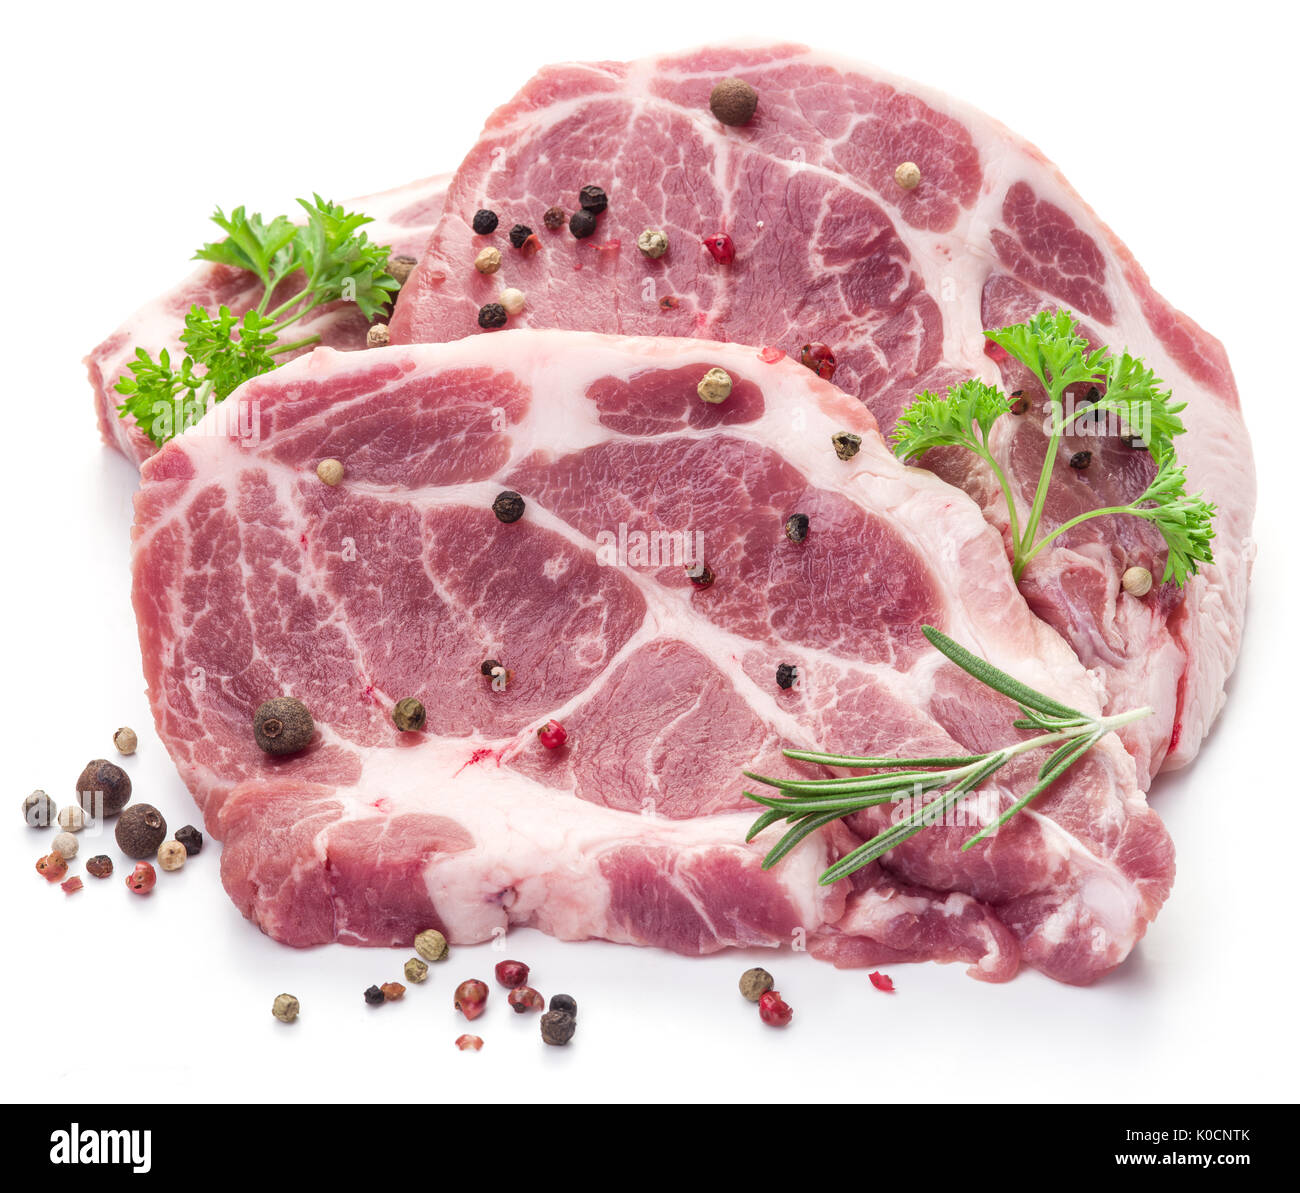 Rohes Schweinefleisch Fleisch Steaks mit Gewürzen auf dem weißen Hintergrund. Stockfoto